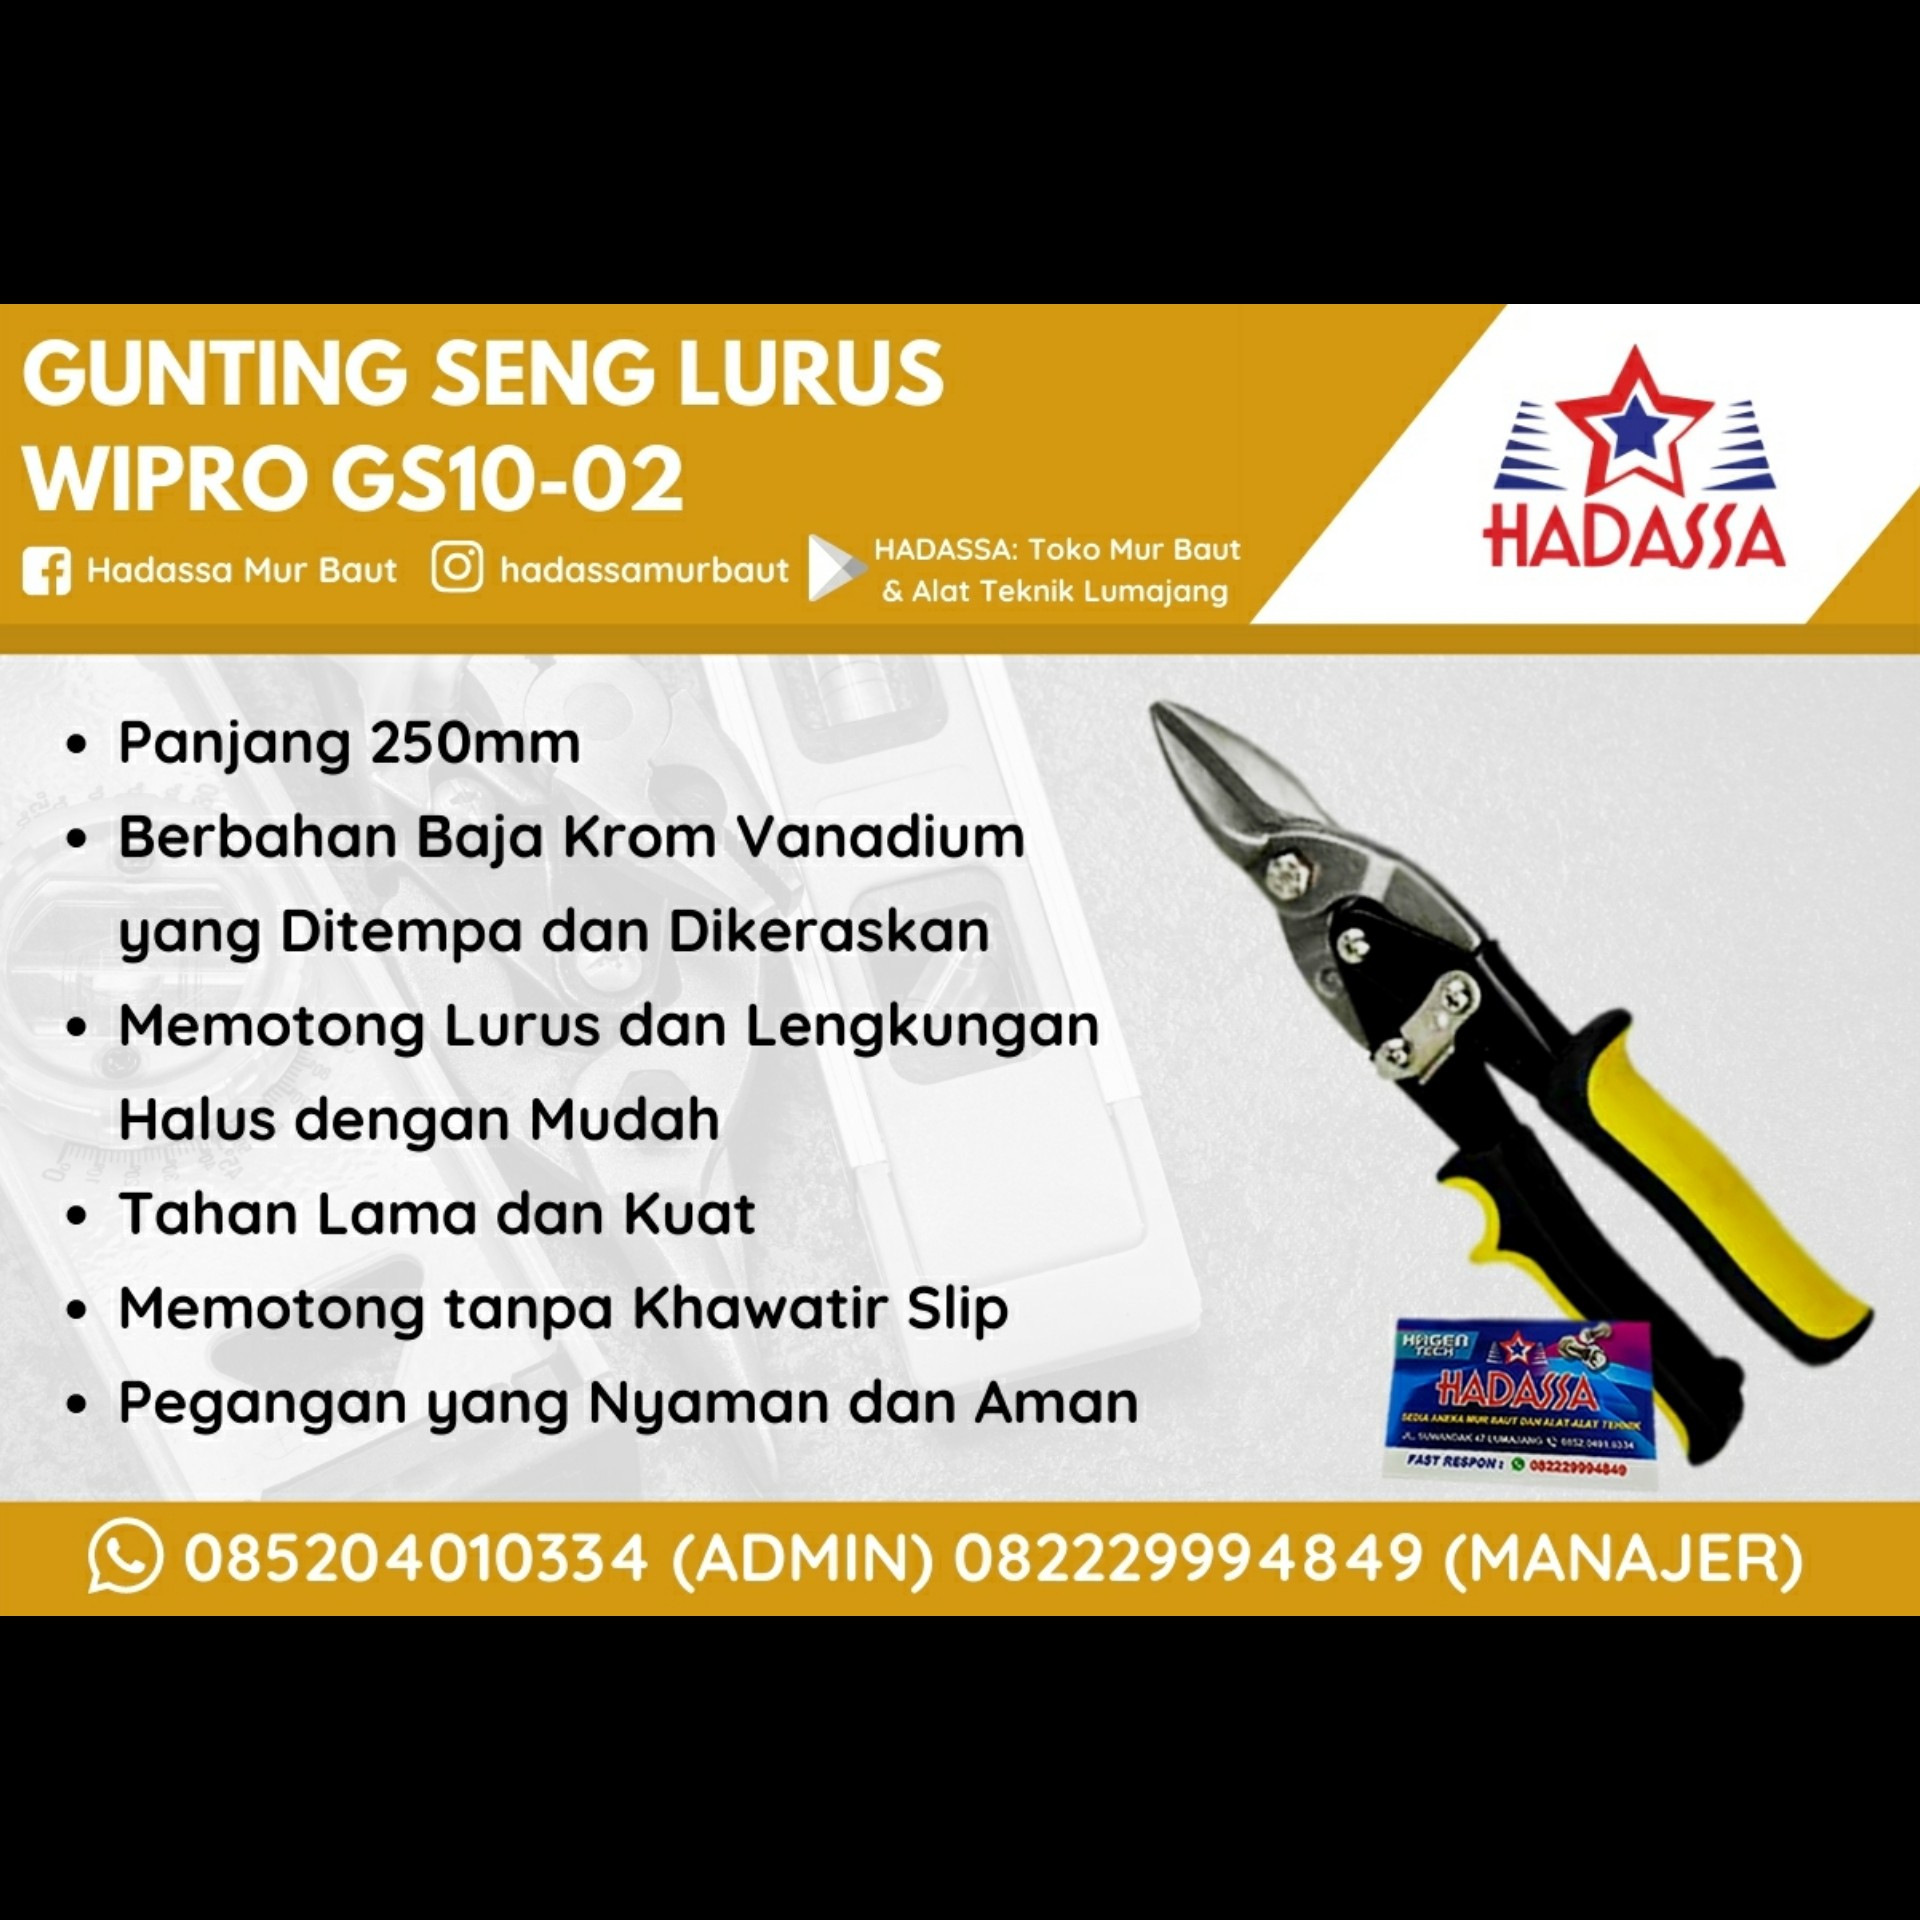 Gunting Seng Lurus Wipro GS10-02